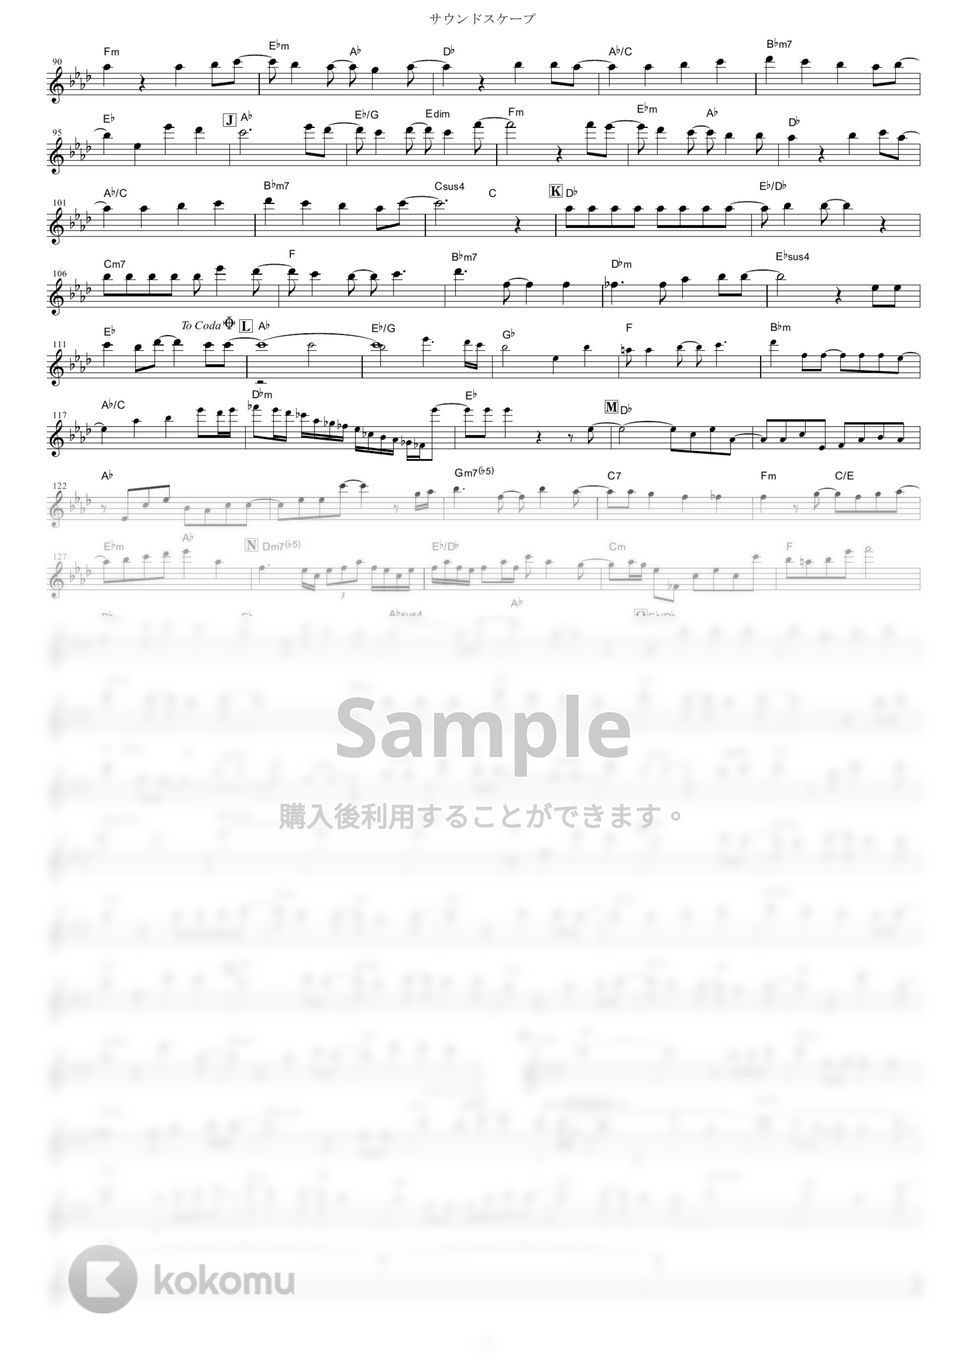 TRUE - サウンドスケープ (『響け！ユーフォニアム2』 / in Bb) by muta-sax